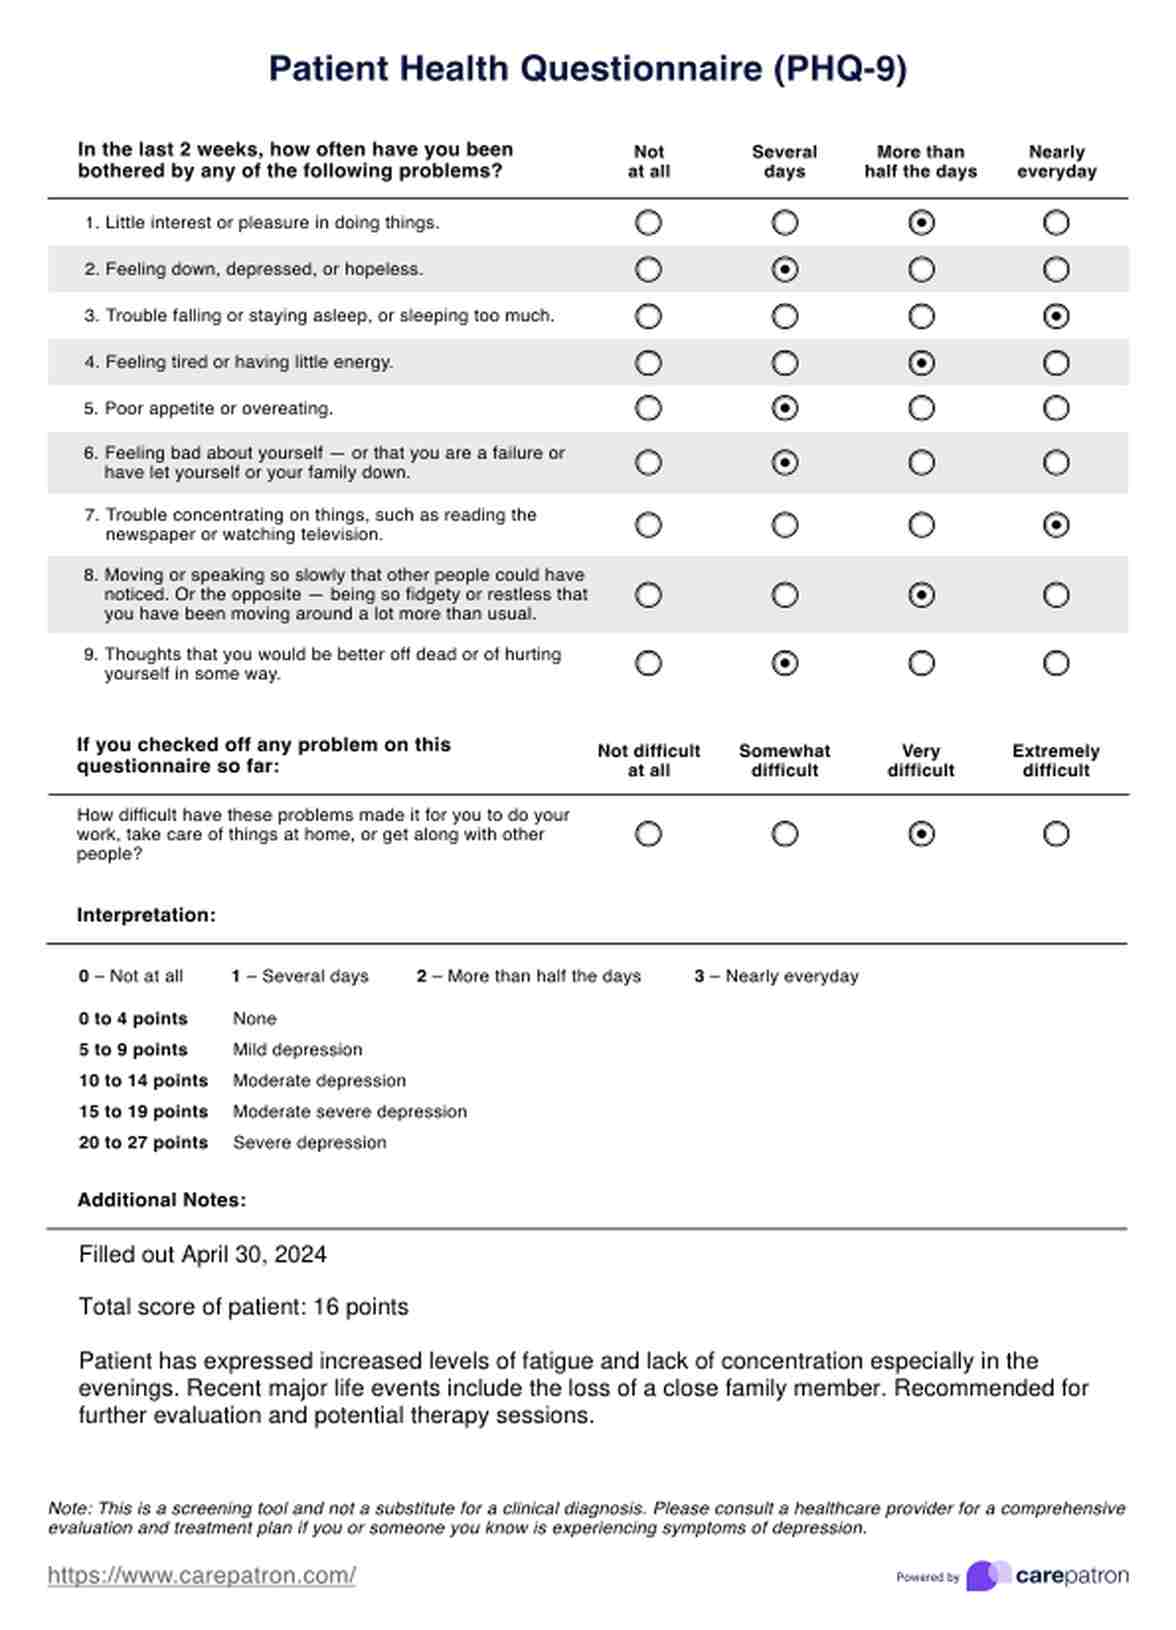 Cuestionario de Salud del Paciente (PHQ-9) PDF Example